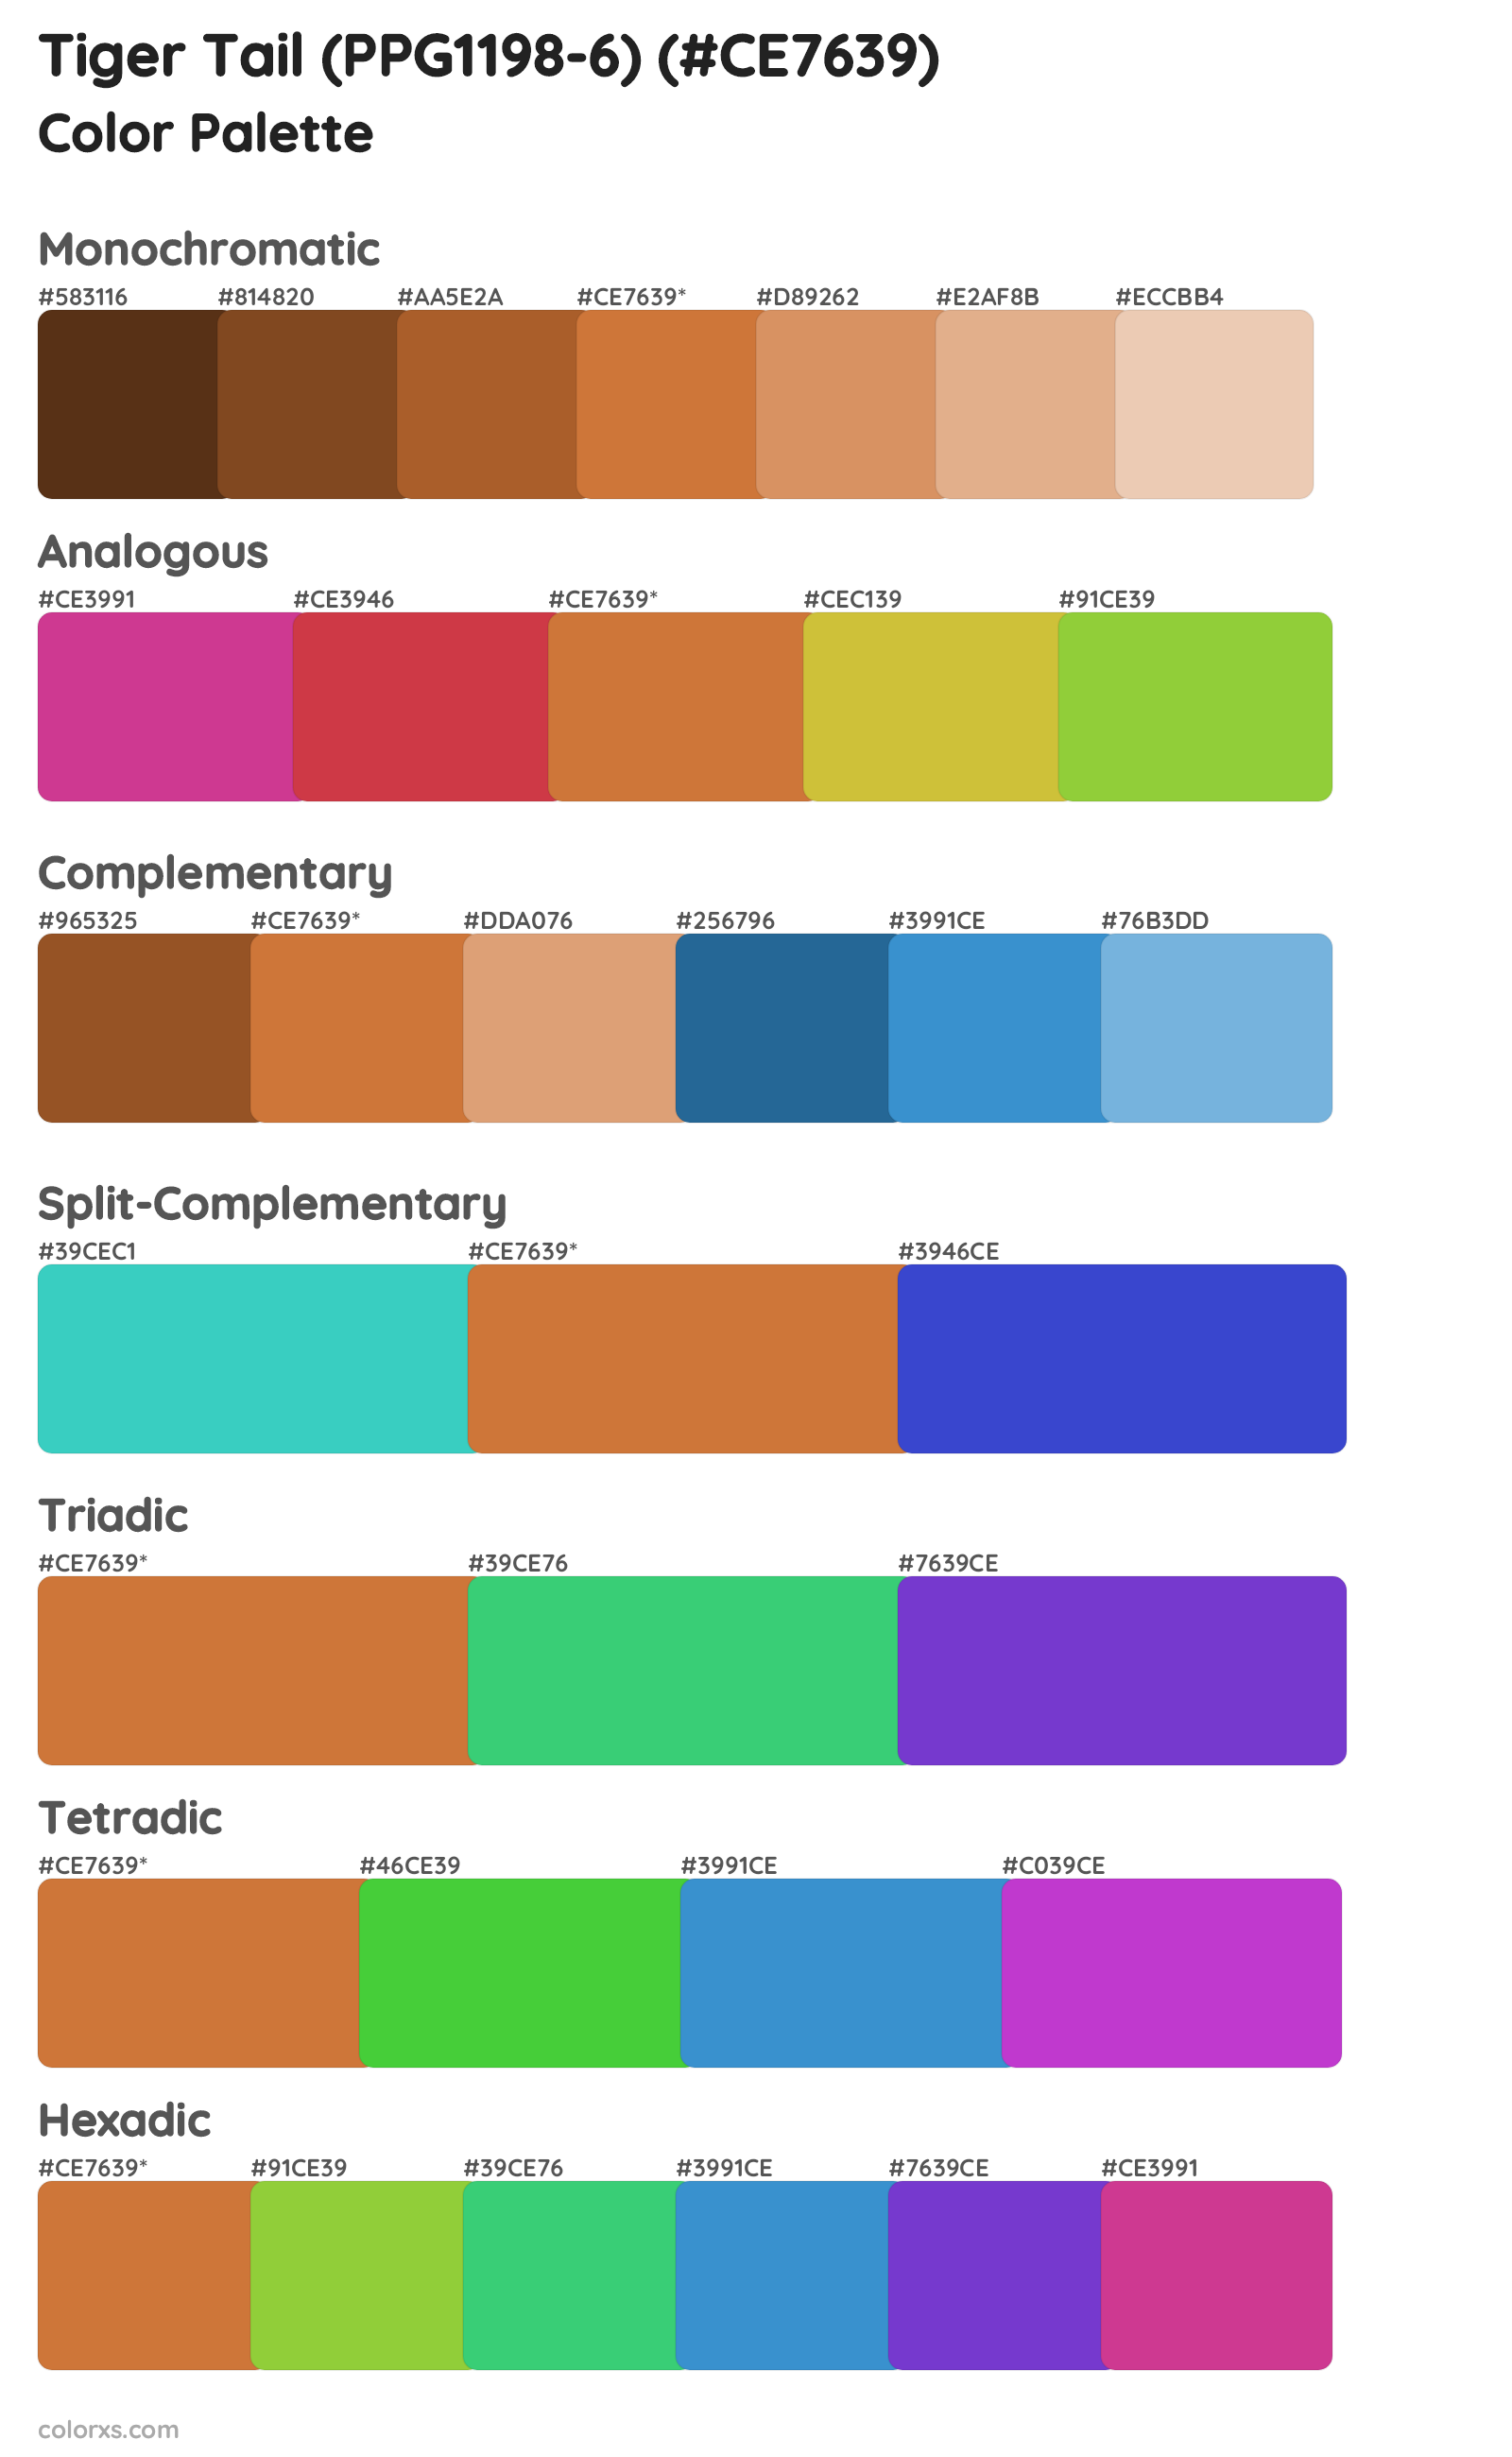 Tiger Tail (PPG1198-6) Color Scheme Palettes